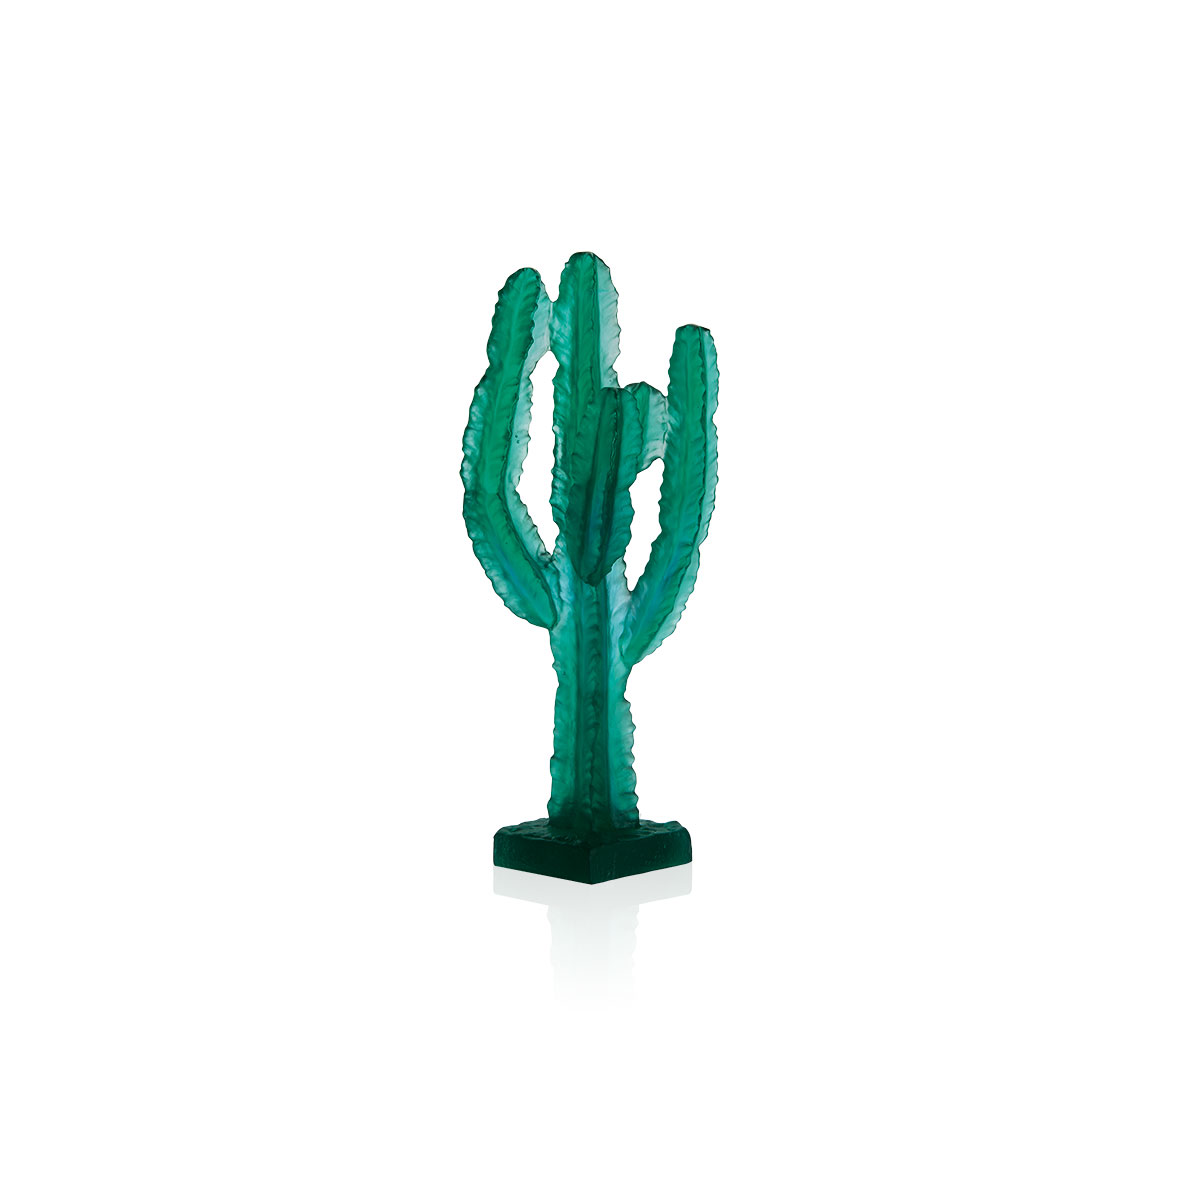 Daum Jardin de Cactus Green Cactus by Emilio Robba Sculpture